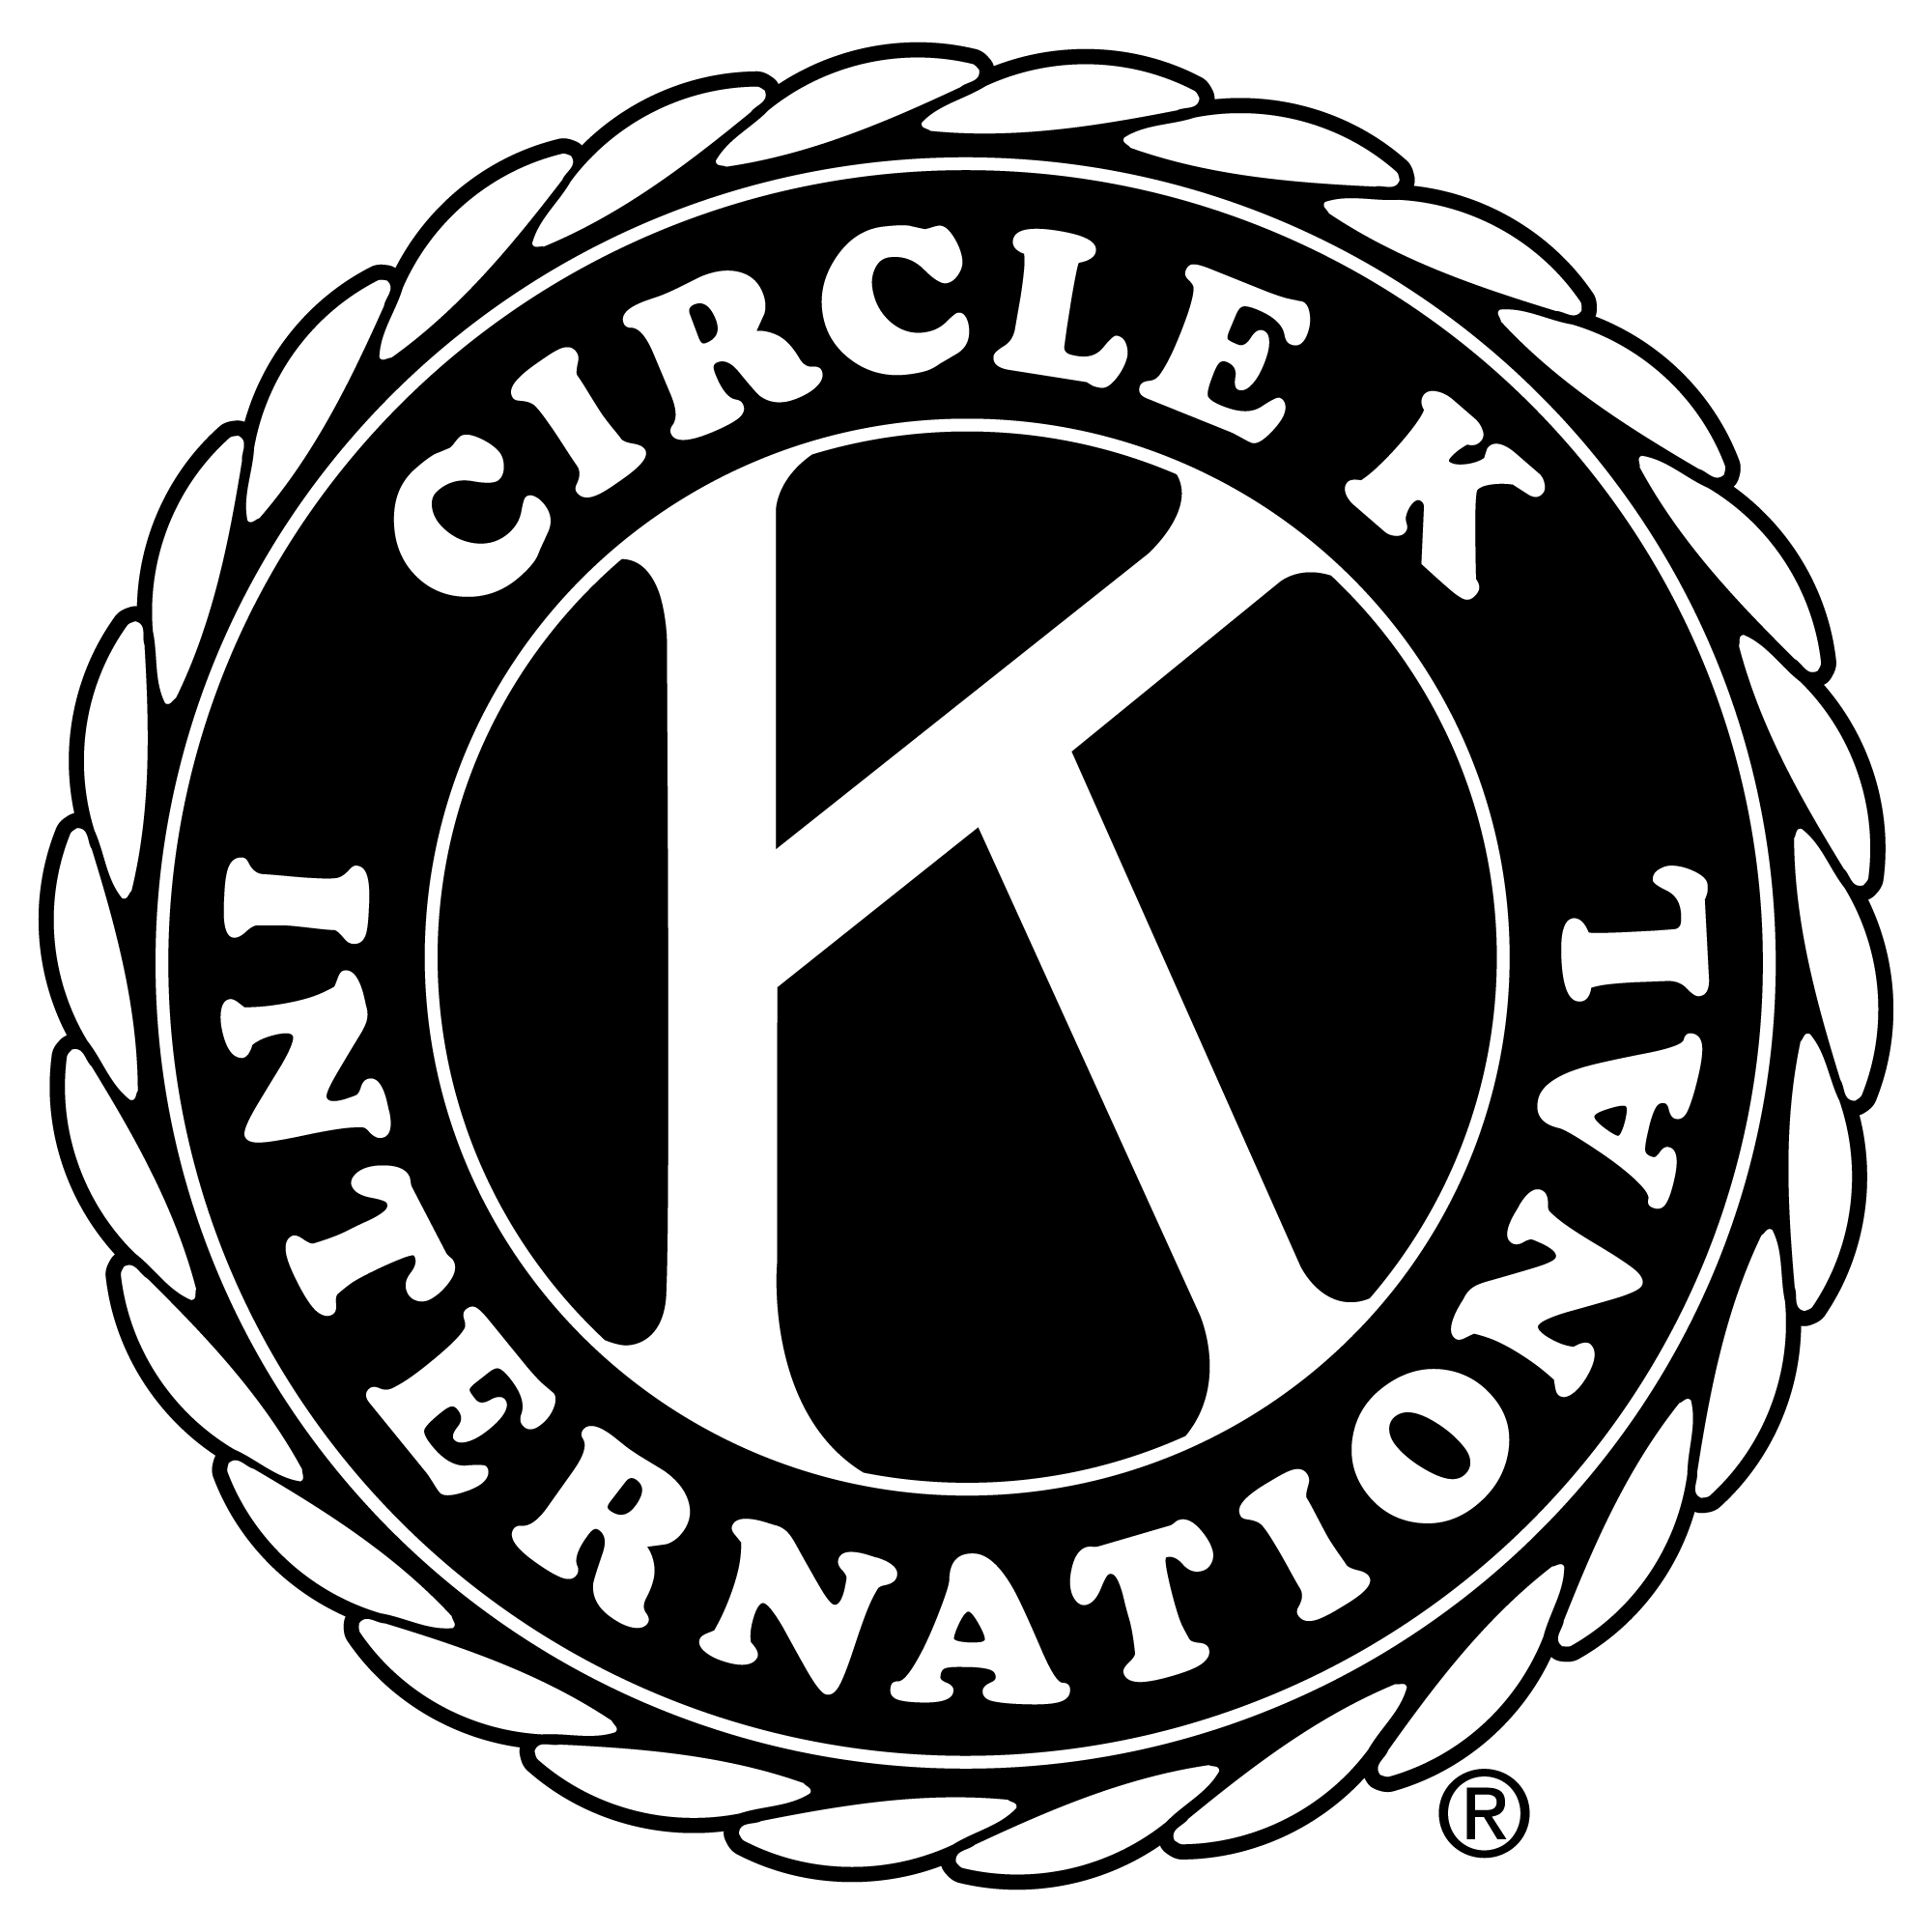 Black Circle K Logo - The Kiwanis Family | Michigan District of Circle K International